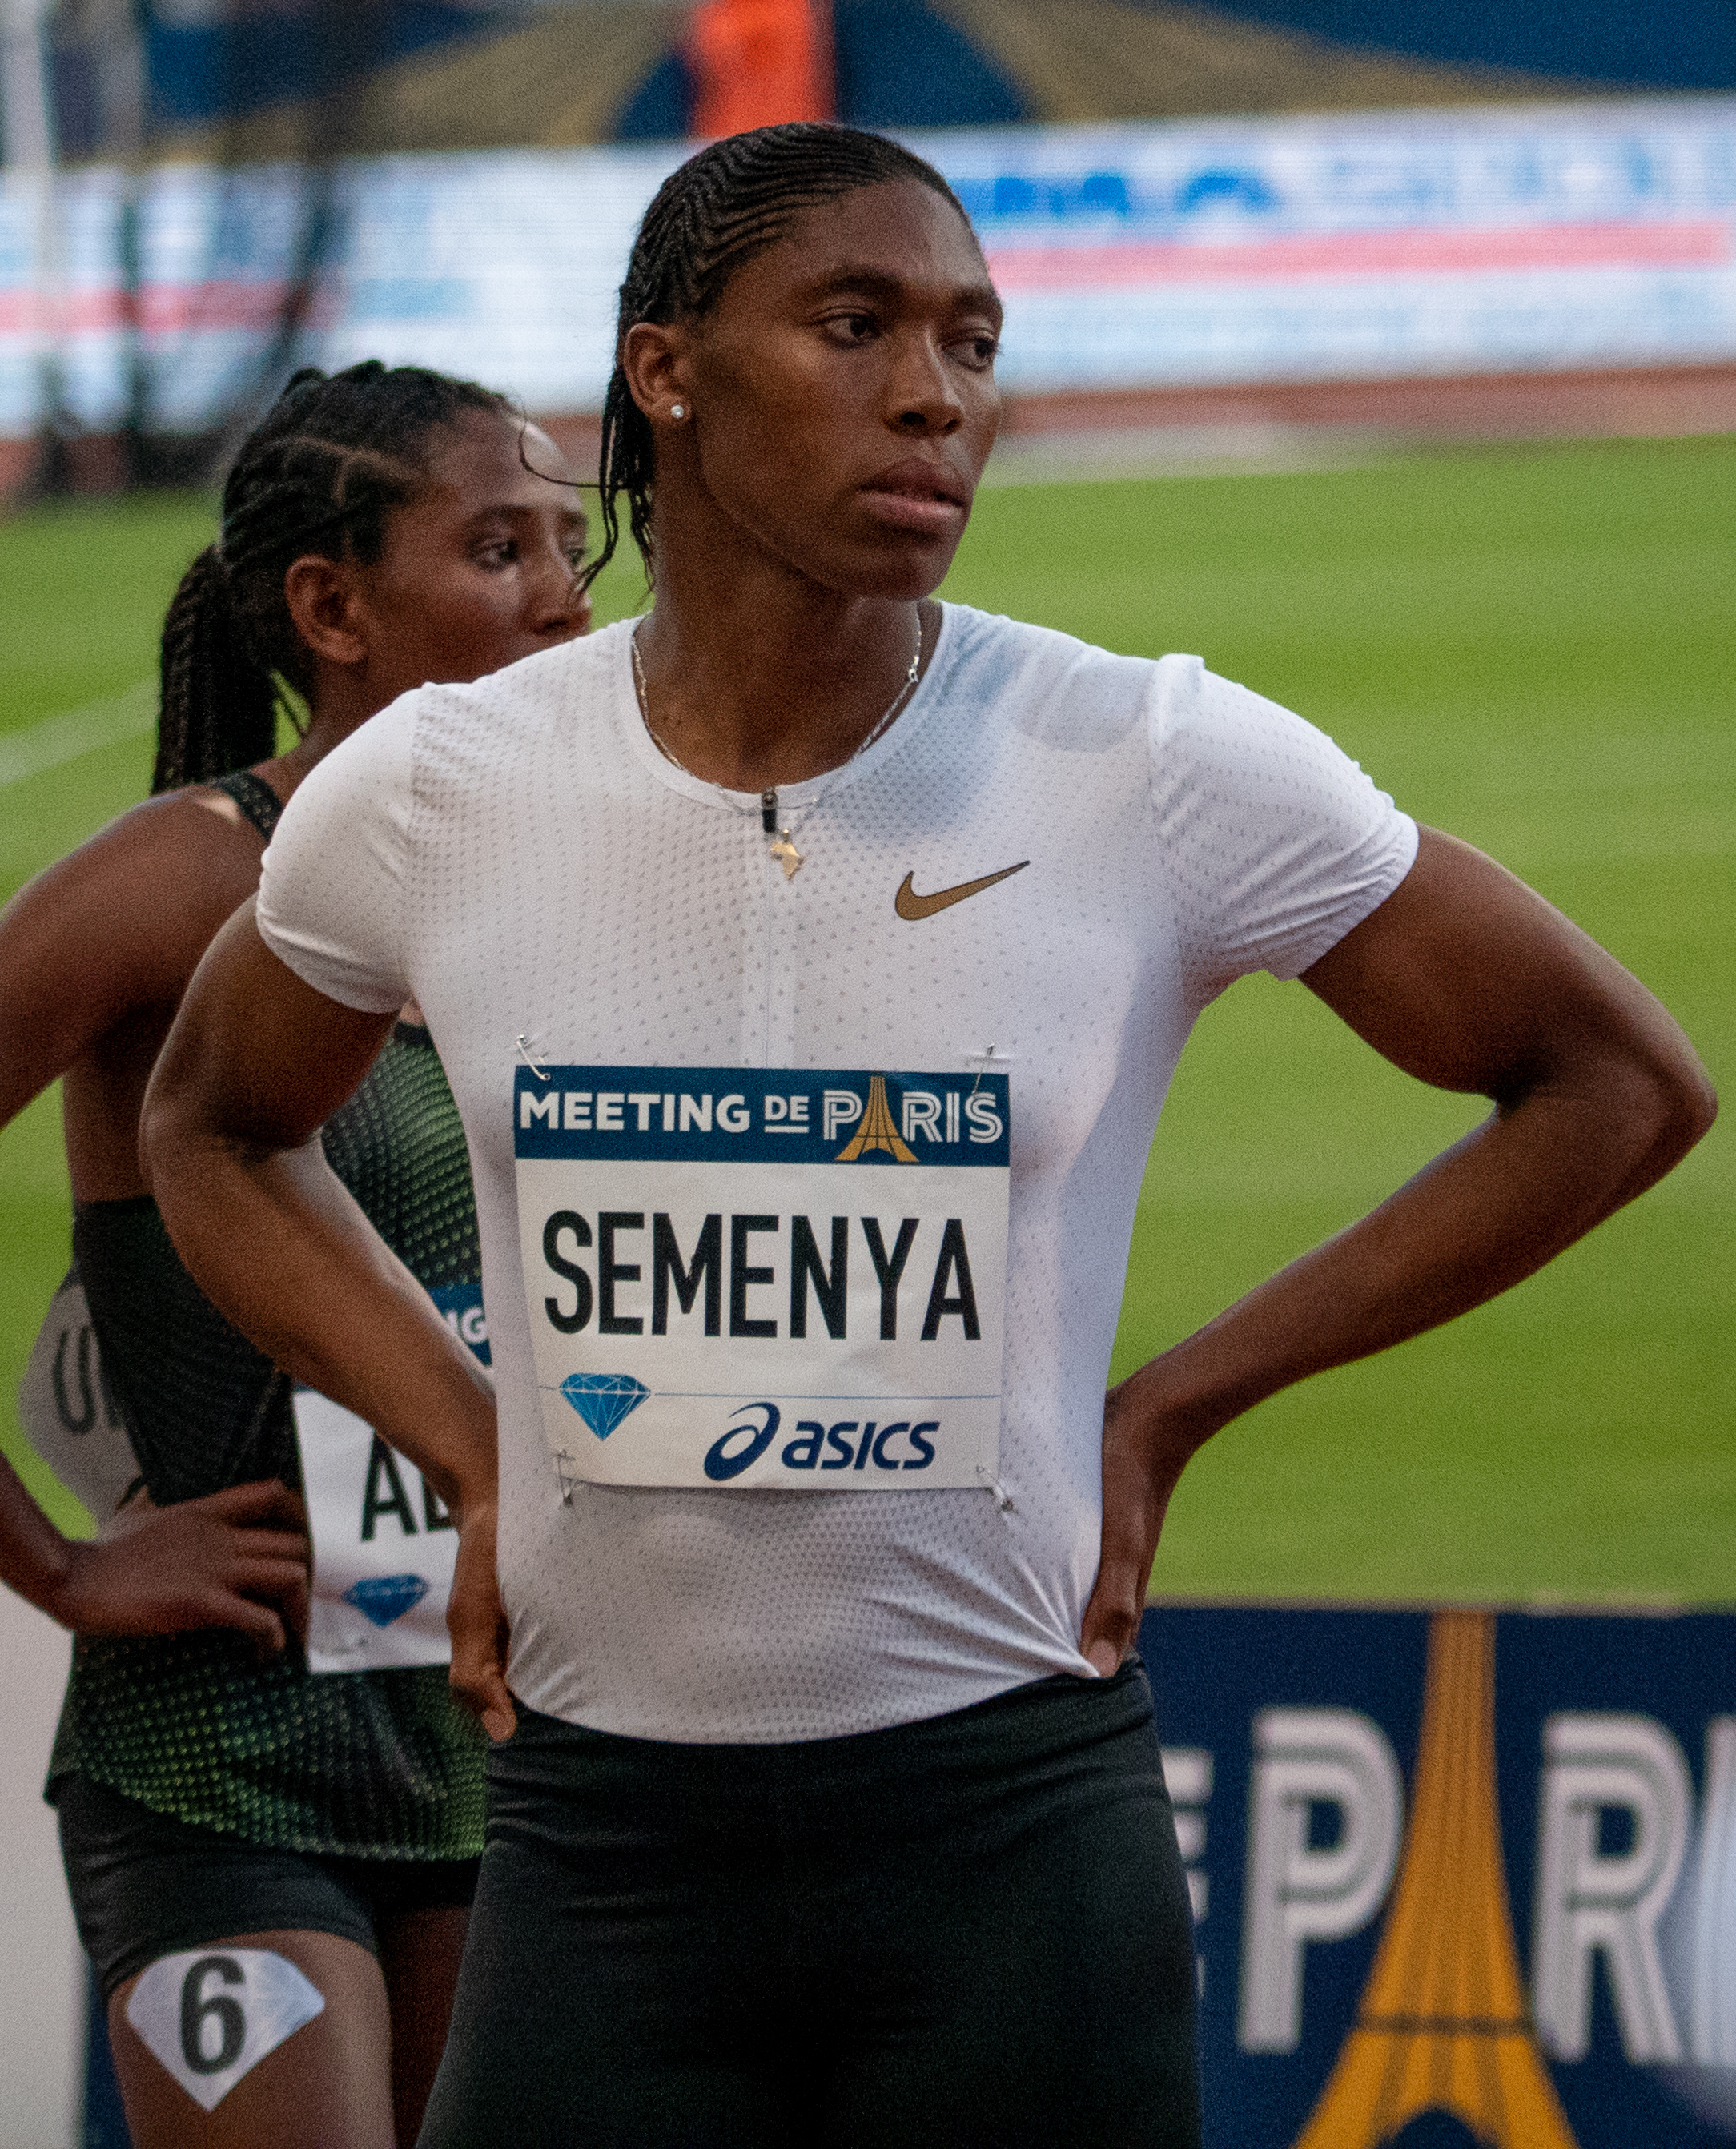 Caster Semenya intersex